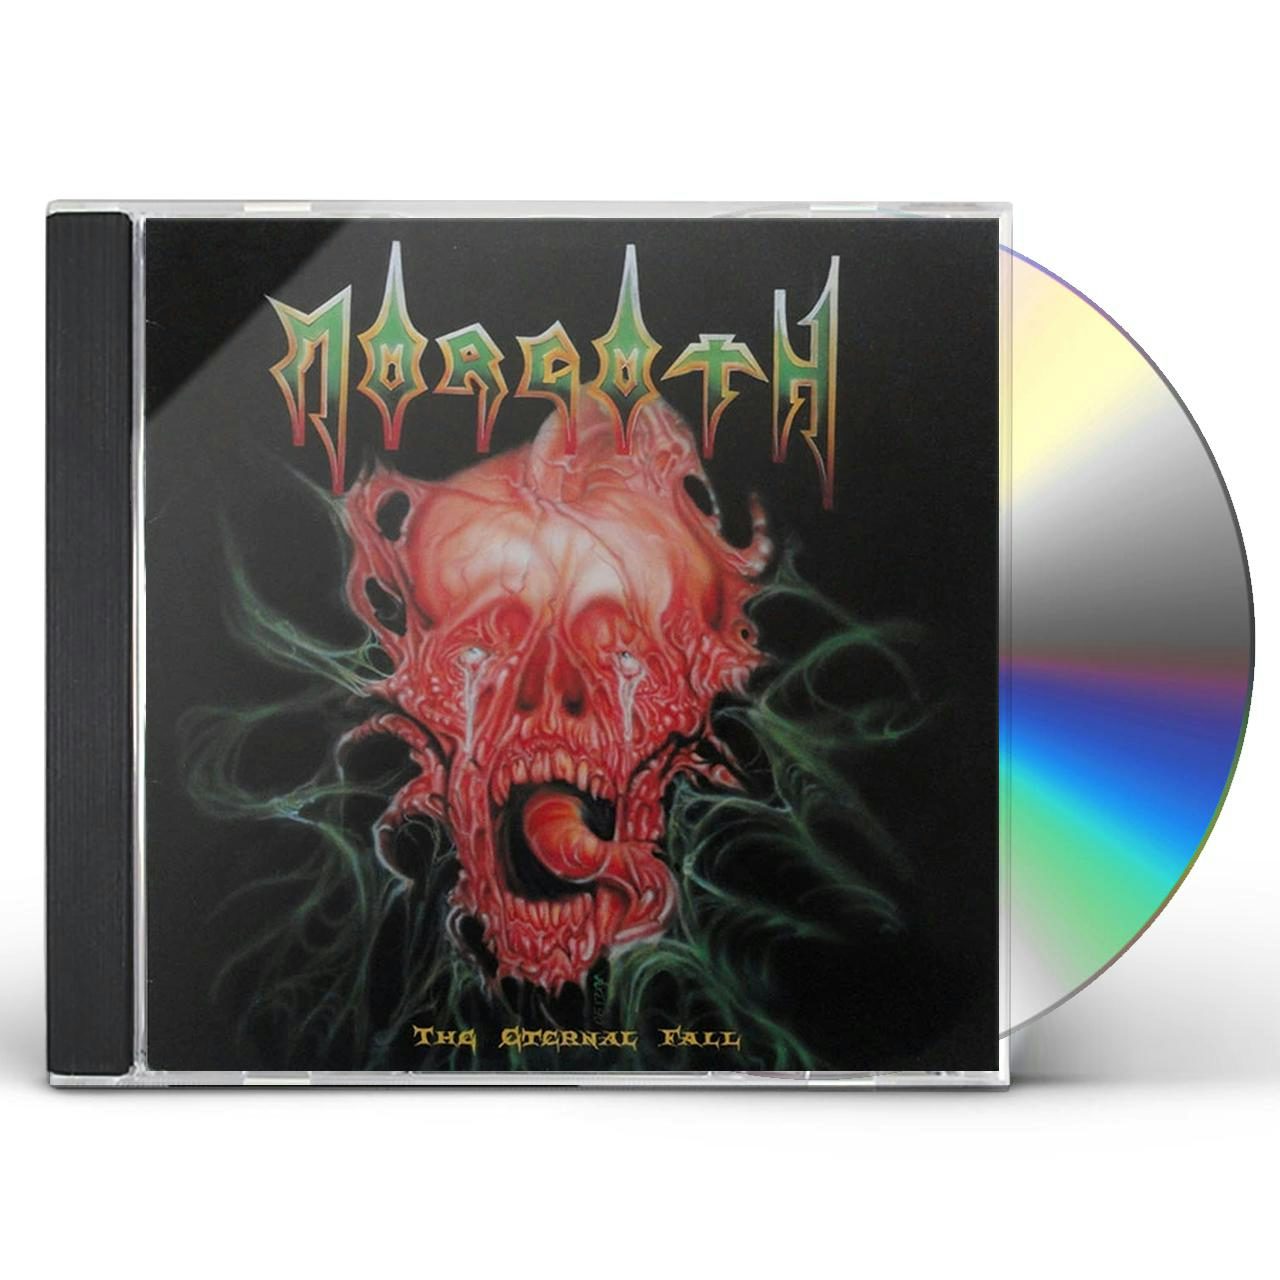 eternal fall / resurrection absurd cd - Morgoth